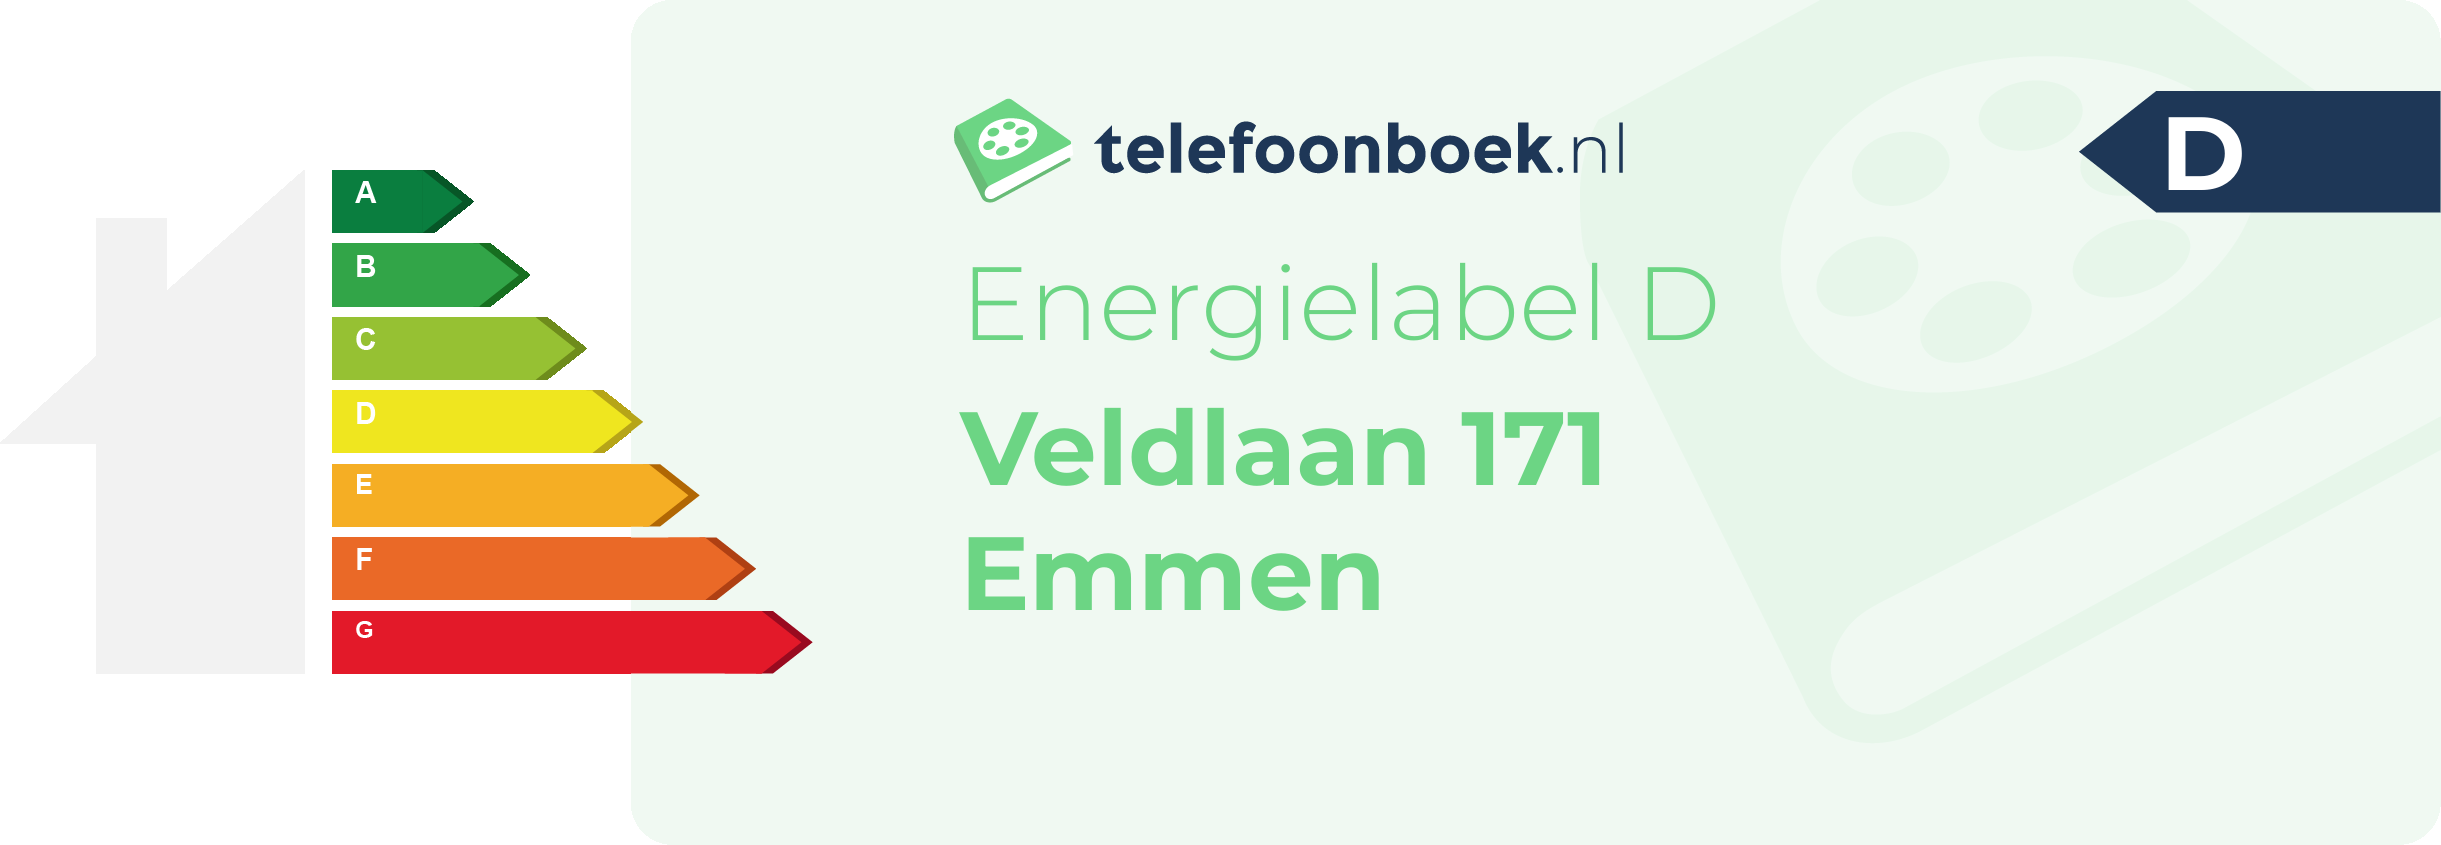 Energielabel Veldlaan 171 Emmen